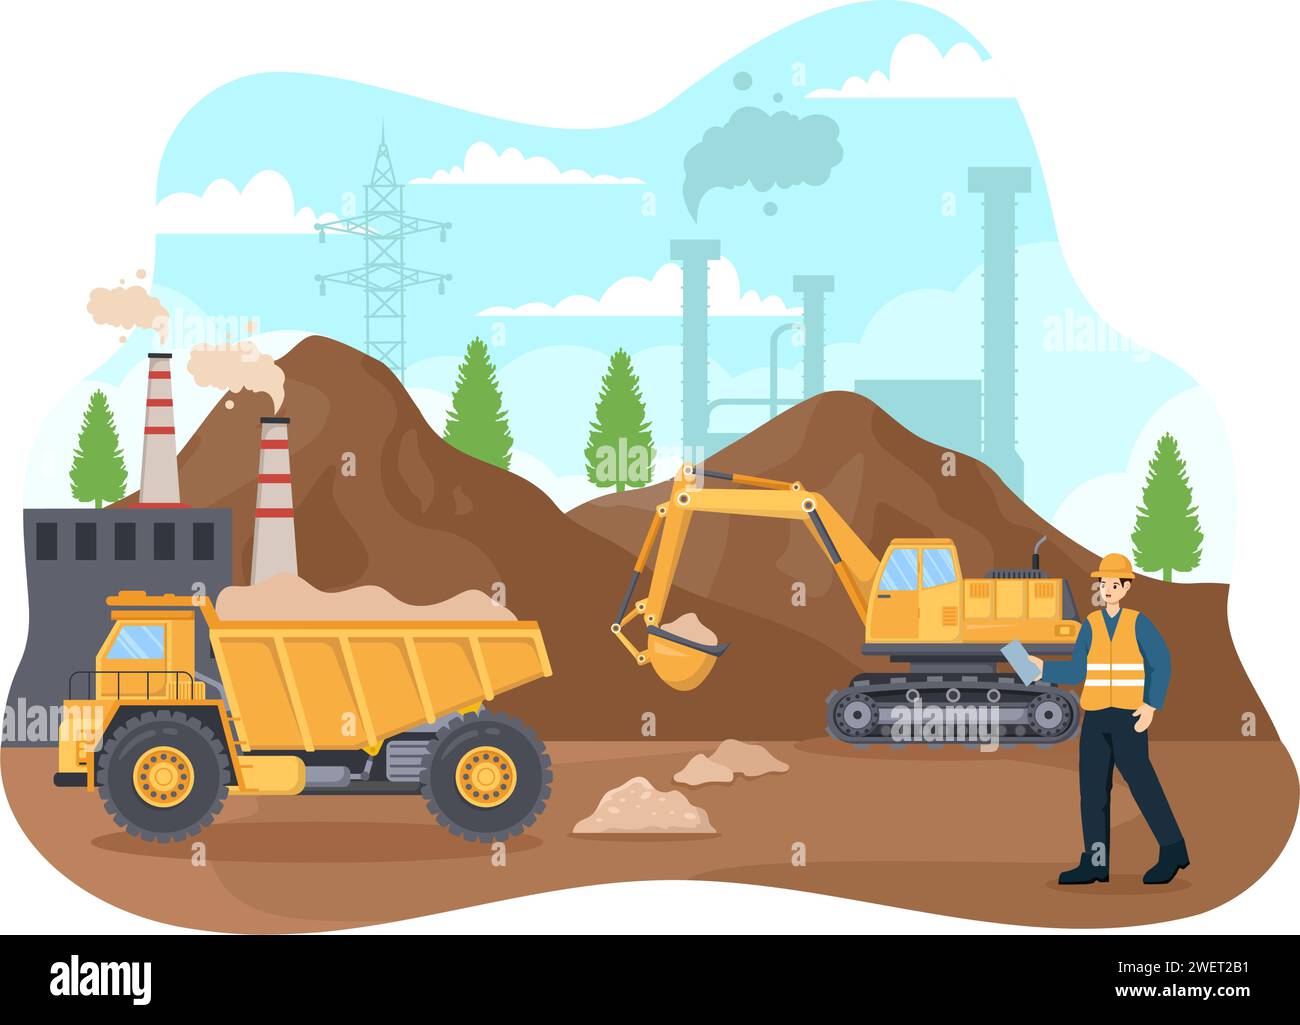 Mining Company Vektor-Illustration mit schweren gelben Dumper Trucks für Sandbergbau industriellen Prozess oder Transport im flachen Karikaturhintergrund Stock Vektor